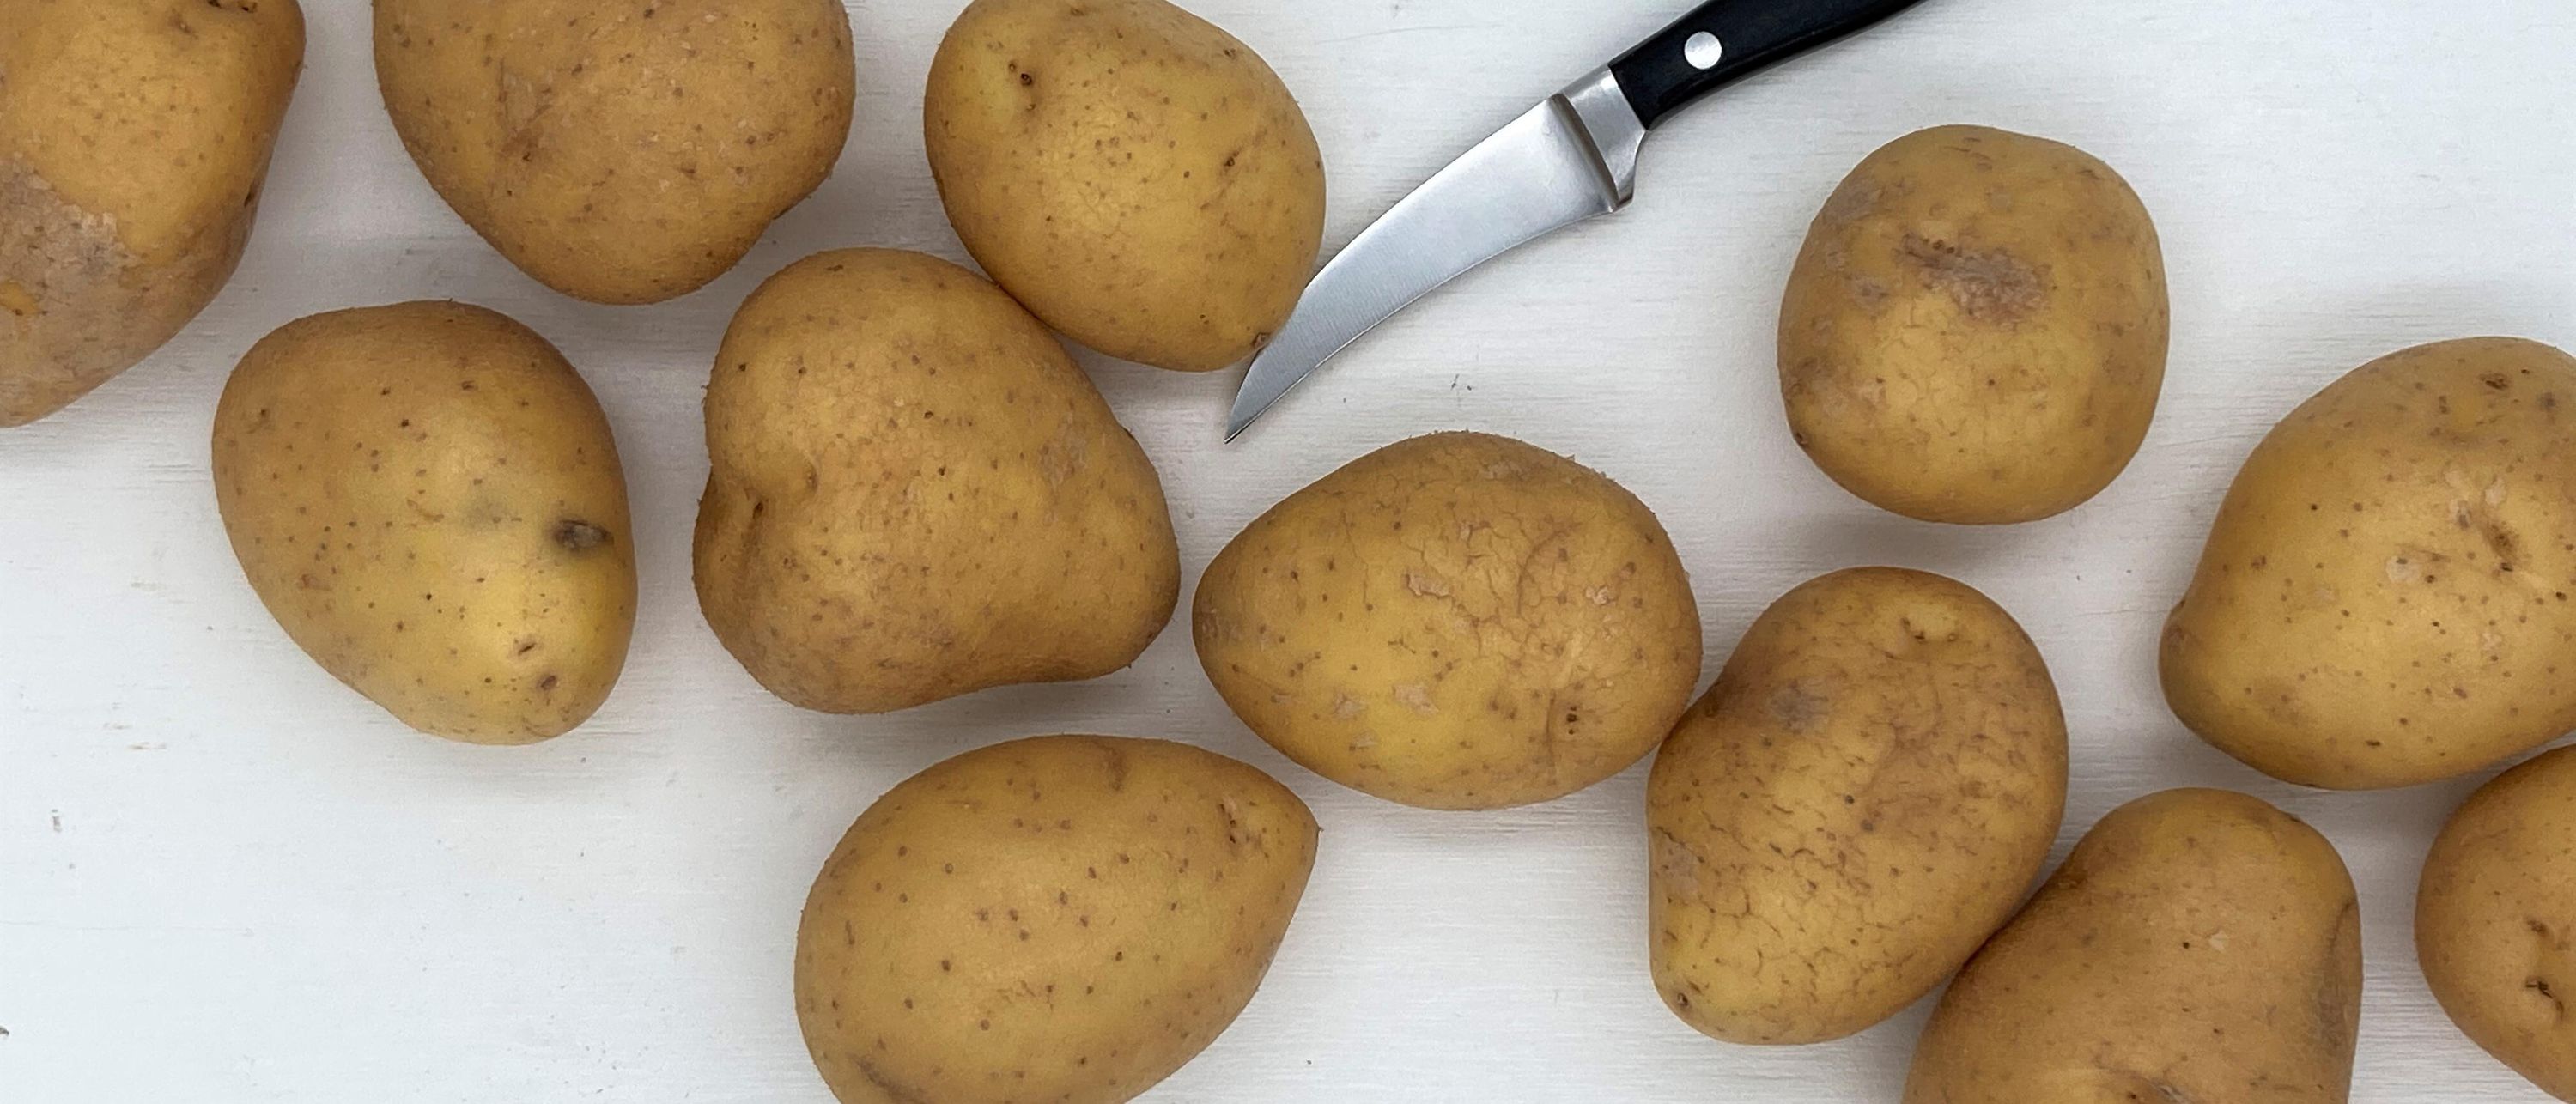 картофель лежит на белом подносе с кухонным ножом